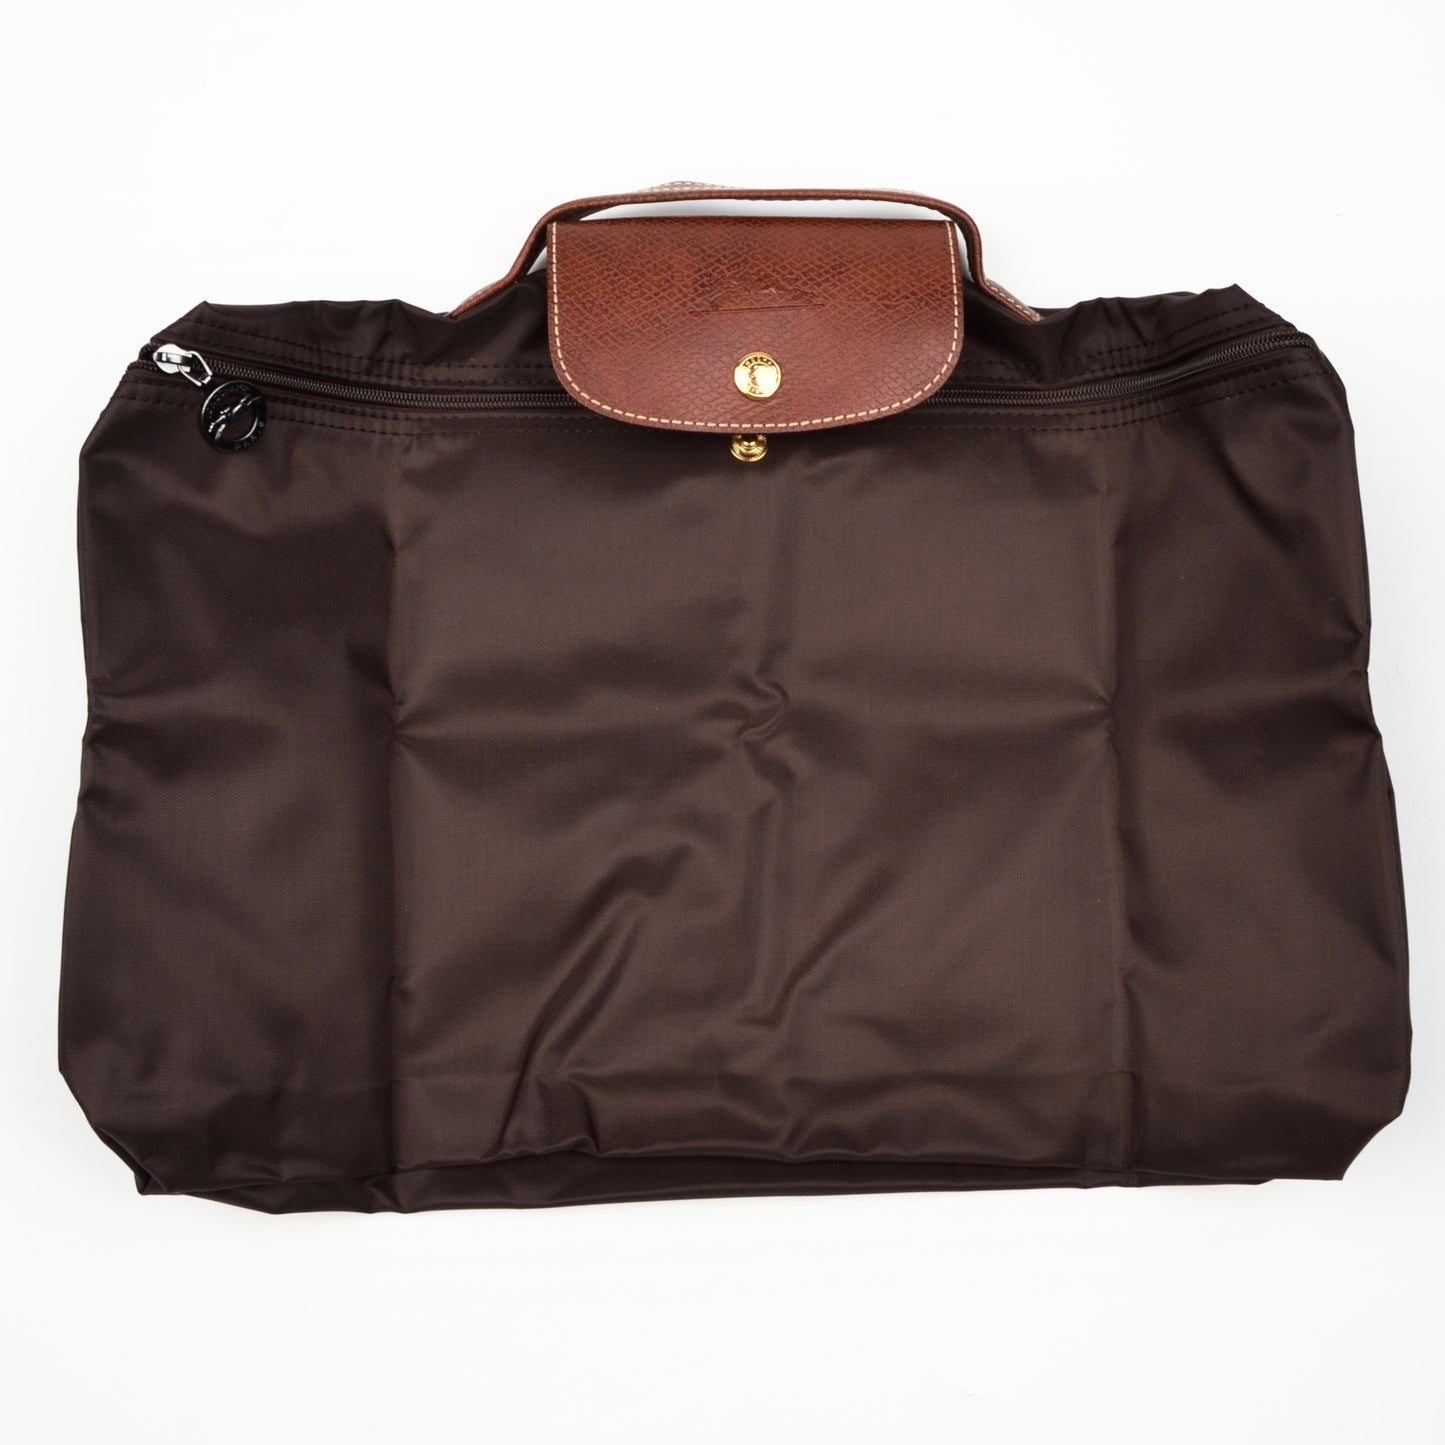 Longchamp Paris Les Pliage Bag "Docs" - Brown